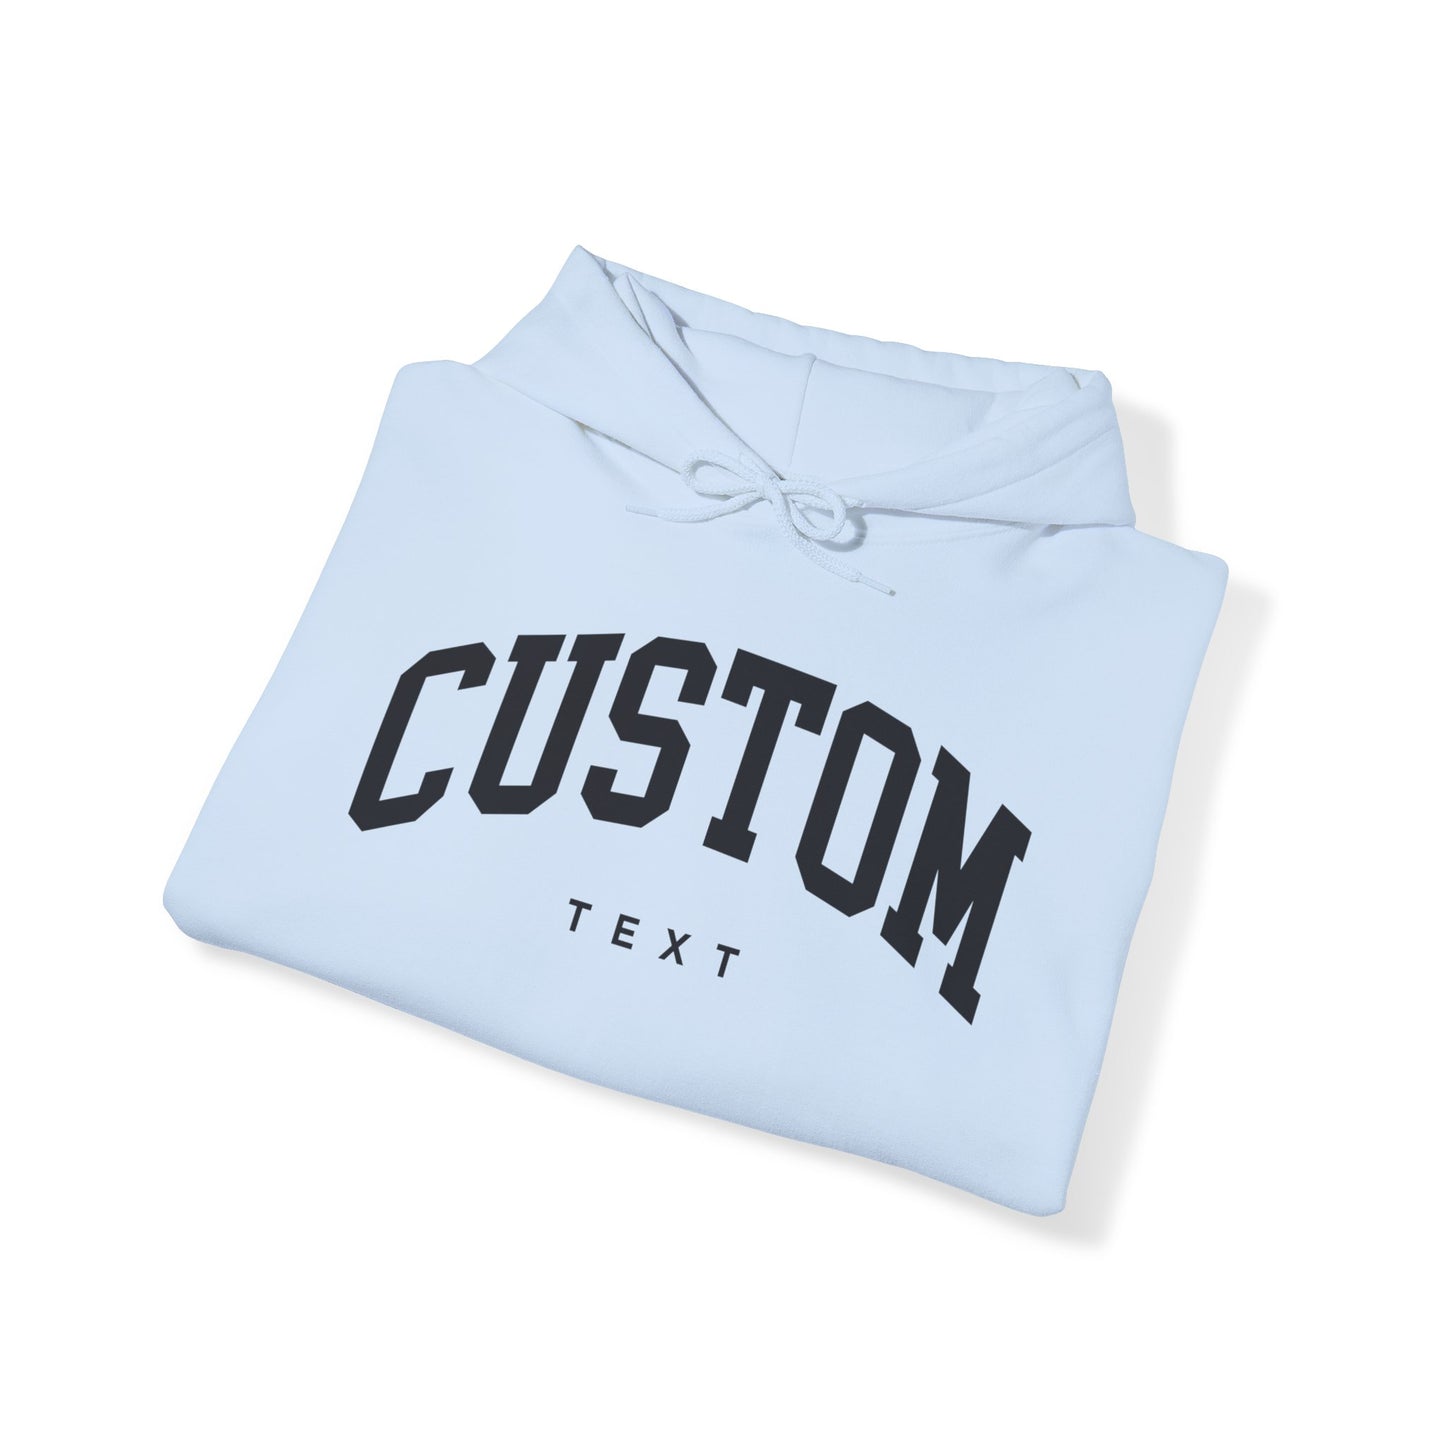 Custom Text Hoodie